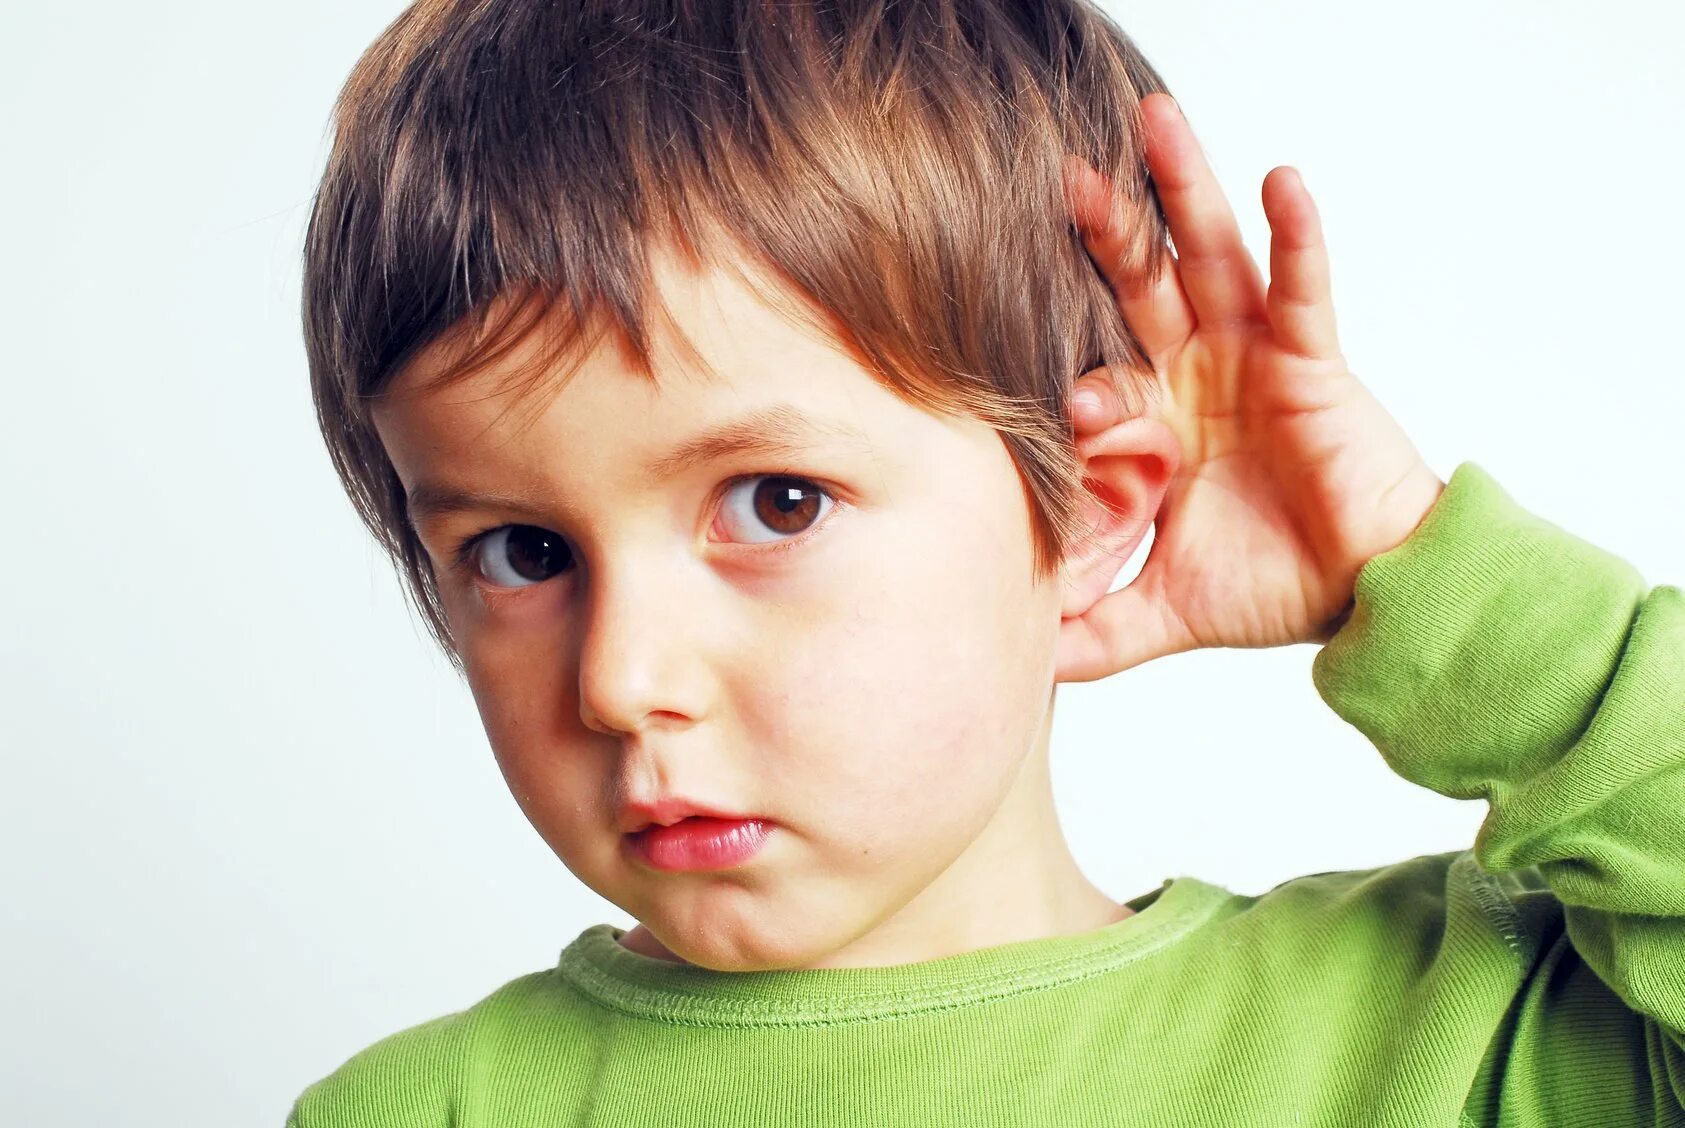 Прислушайся к звучанию. Дет с нарушением слуха. Глухой ребенок. Дети с нарушениями. Слуховое восприятие у детей.